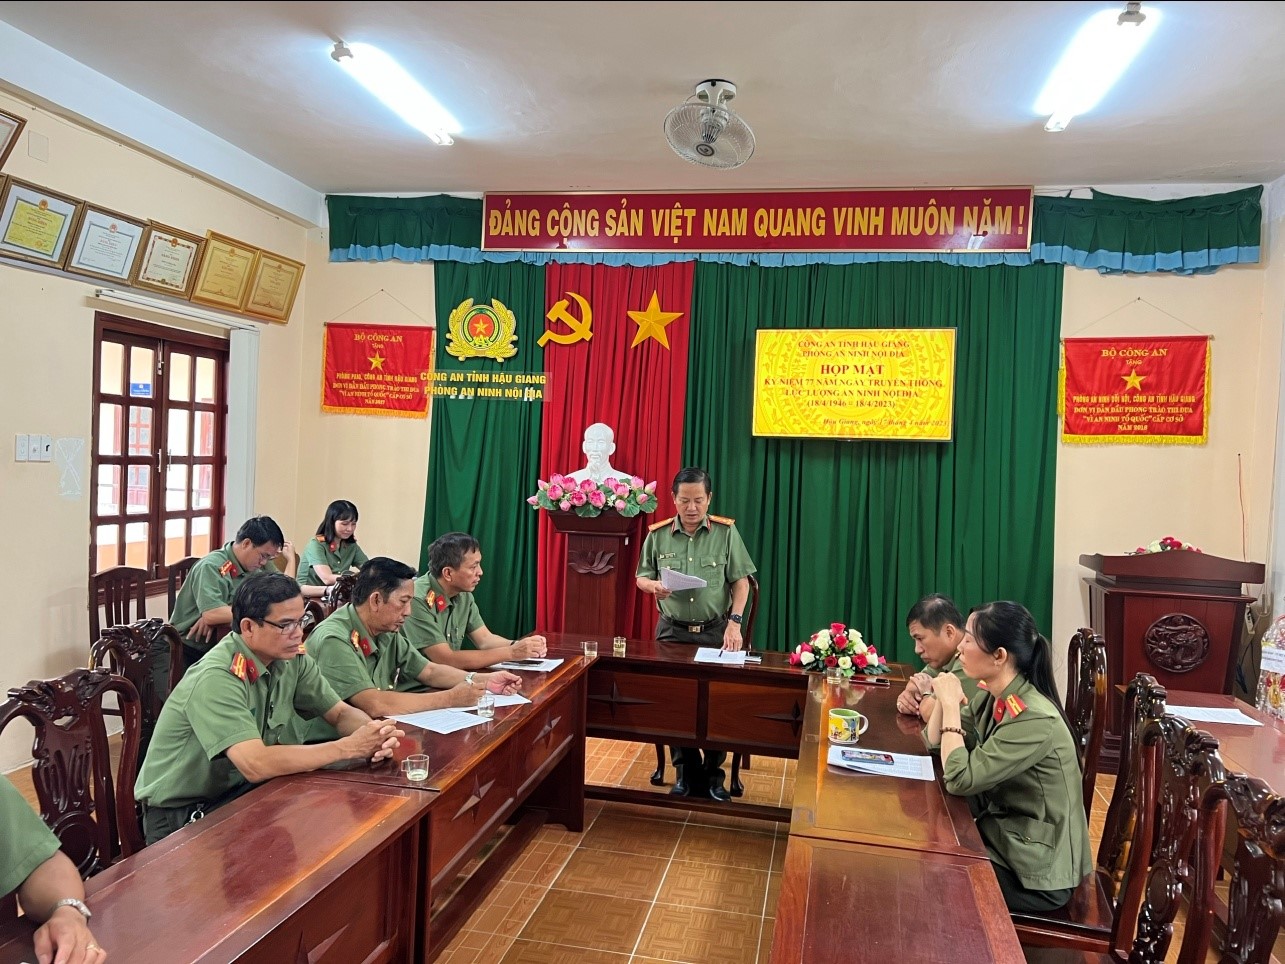 Đồng chí Thượng tá Trần Đoan Hùng, Trưởng phòng An ninh nội địa phát biểu ôn lại truyền thống 77 năm xây dựng, chiến đấu và trưởng thành của lực lượng An ninh nội địa